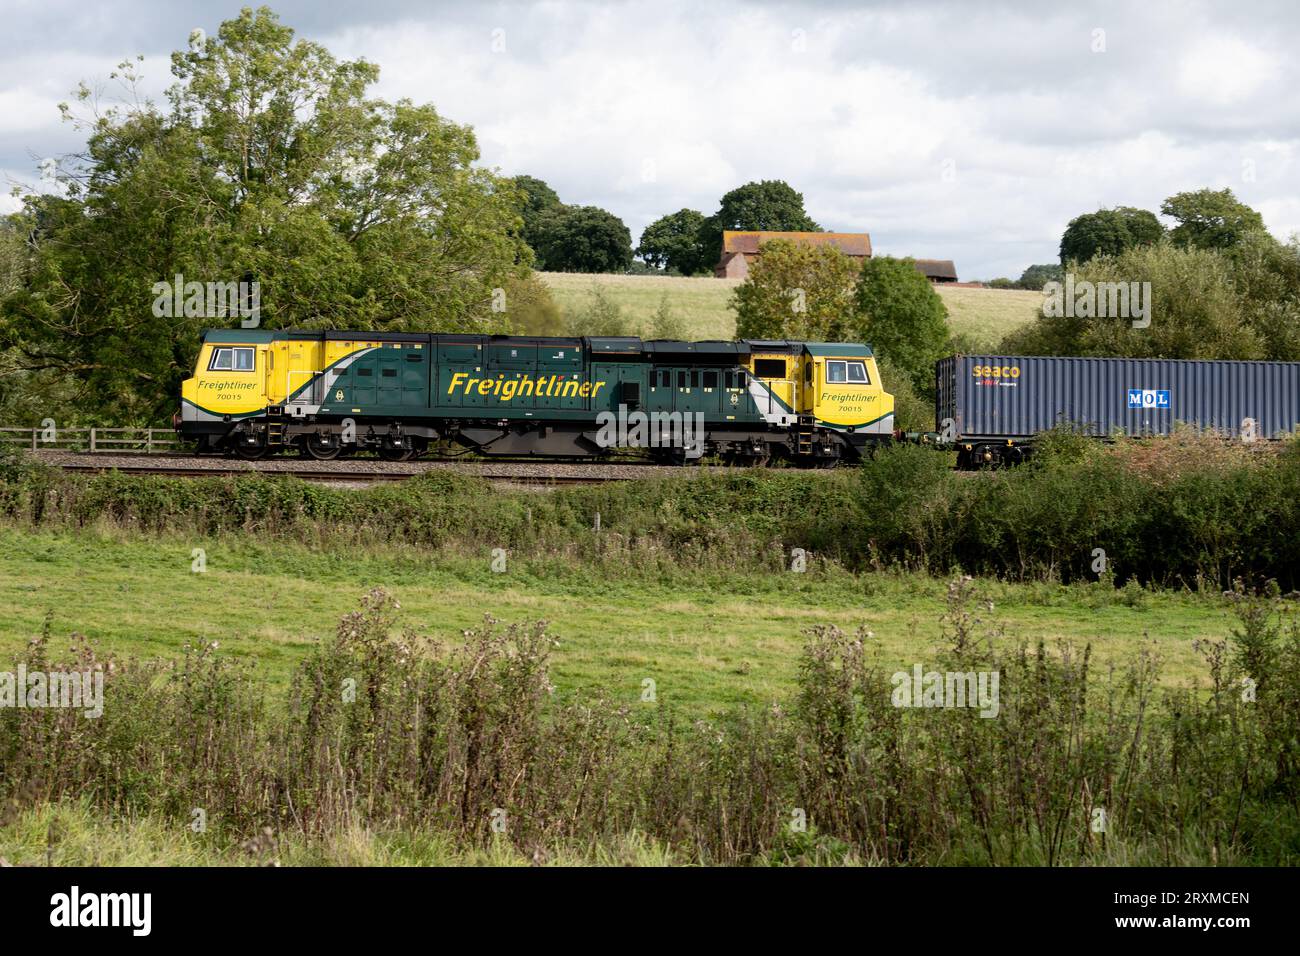 Diesellokomotive der Baureihe 70 Nr. 70015, die einen freightliner-Zug zieht, Warwickshire, England, Großbritannien Stockfoto